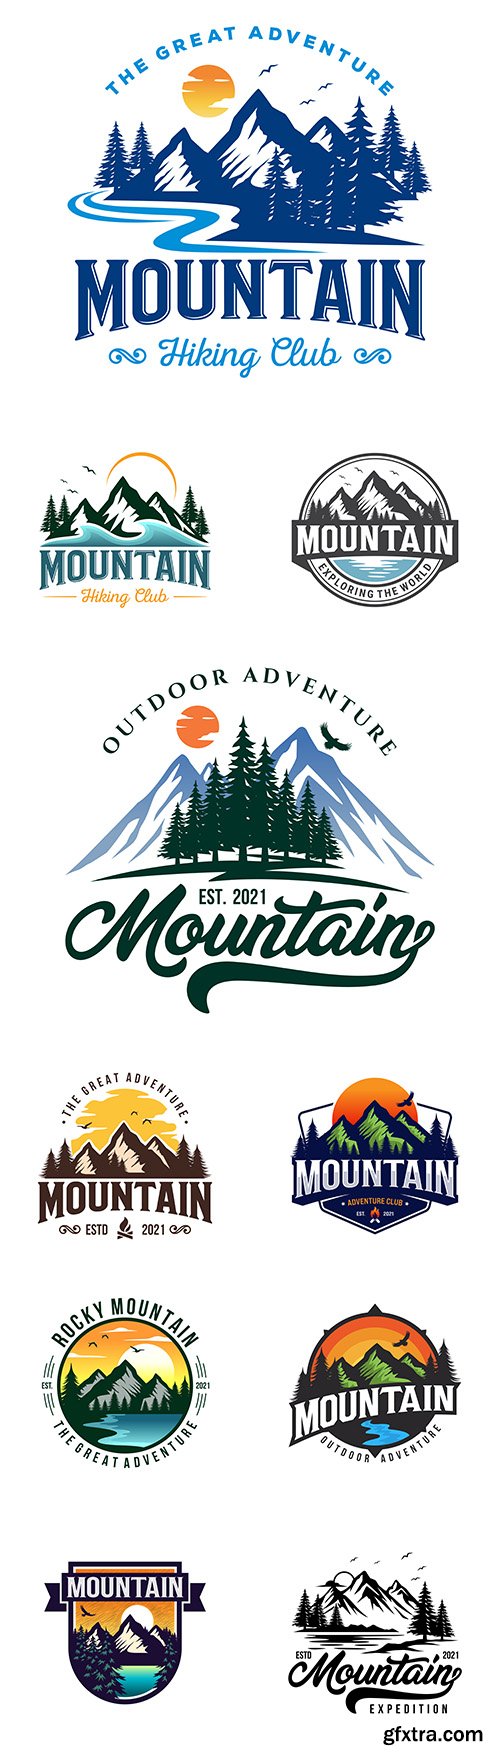 Mountain adventure brand name company logos design
